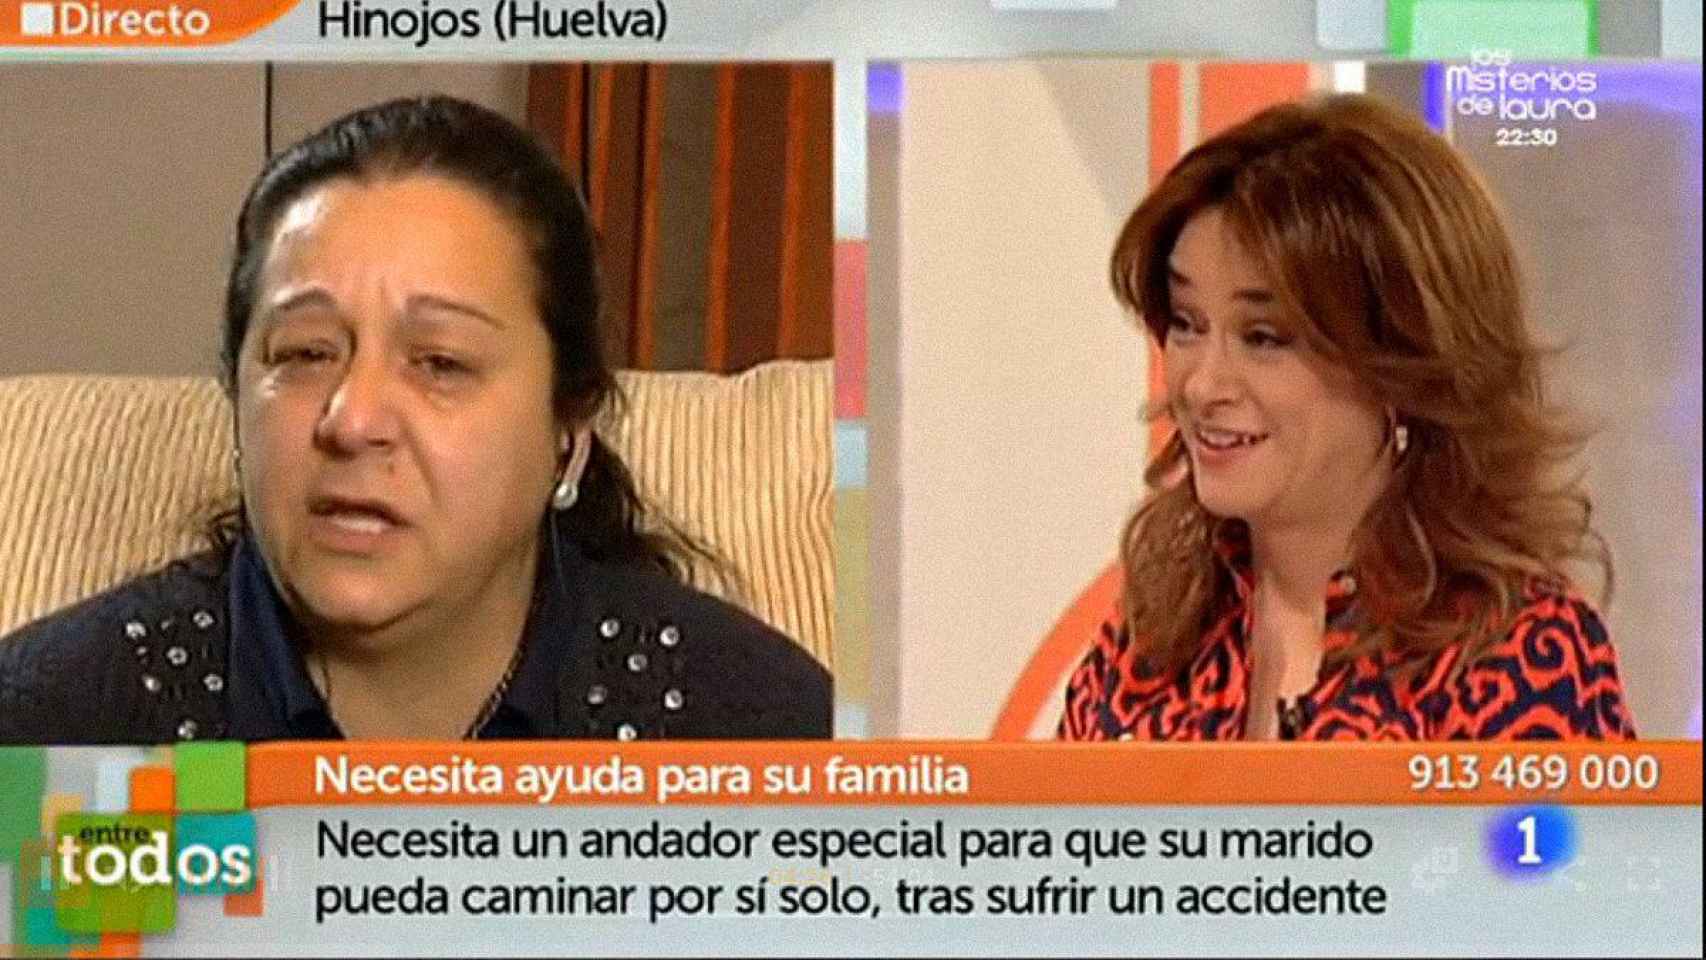 Loli, sospechosa, y Toñi charlando durante el programa de RTVE Entre todos